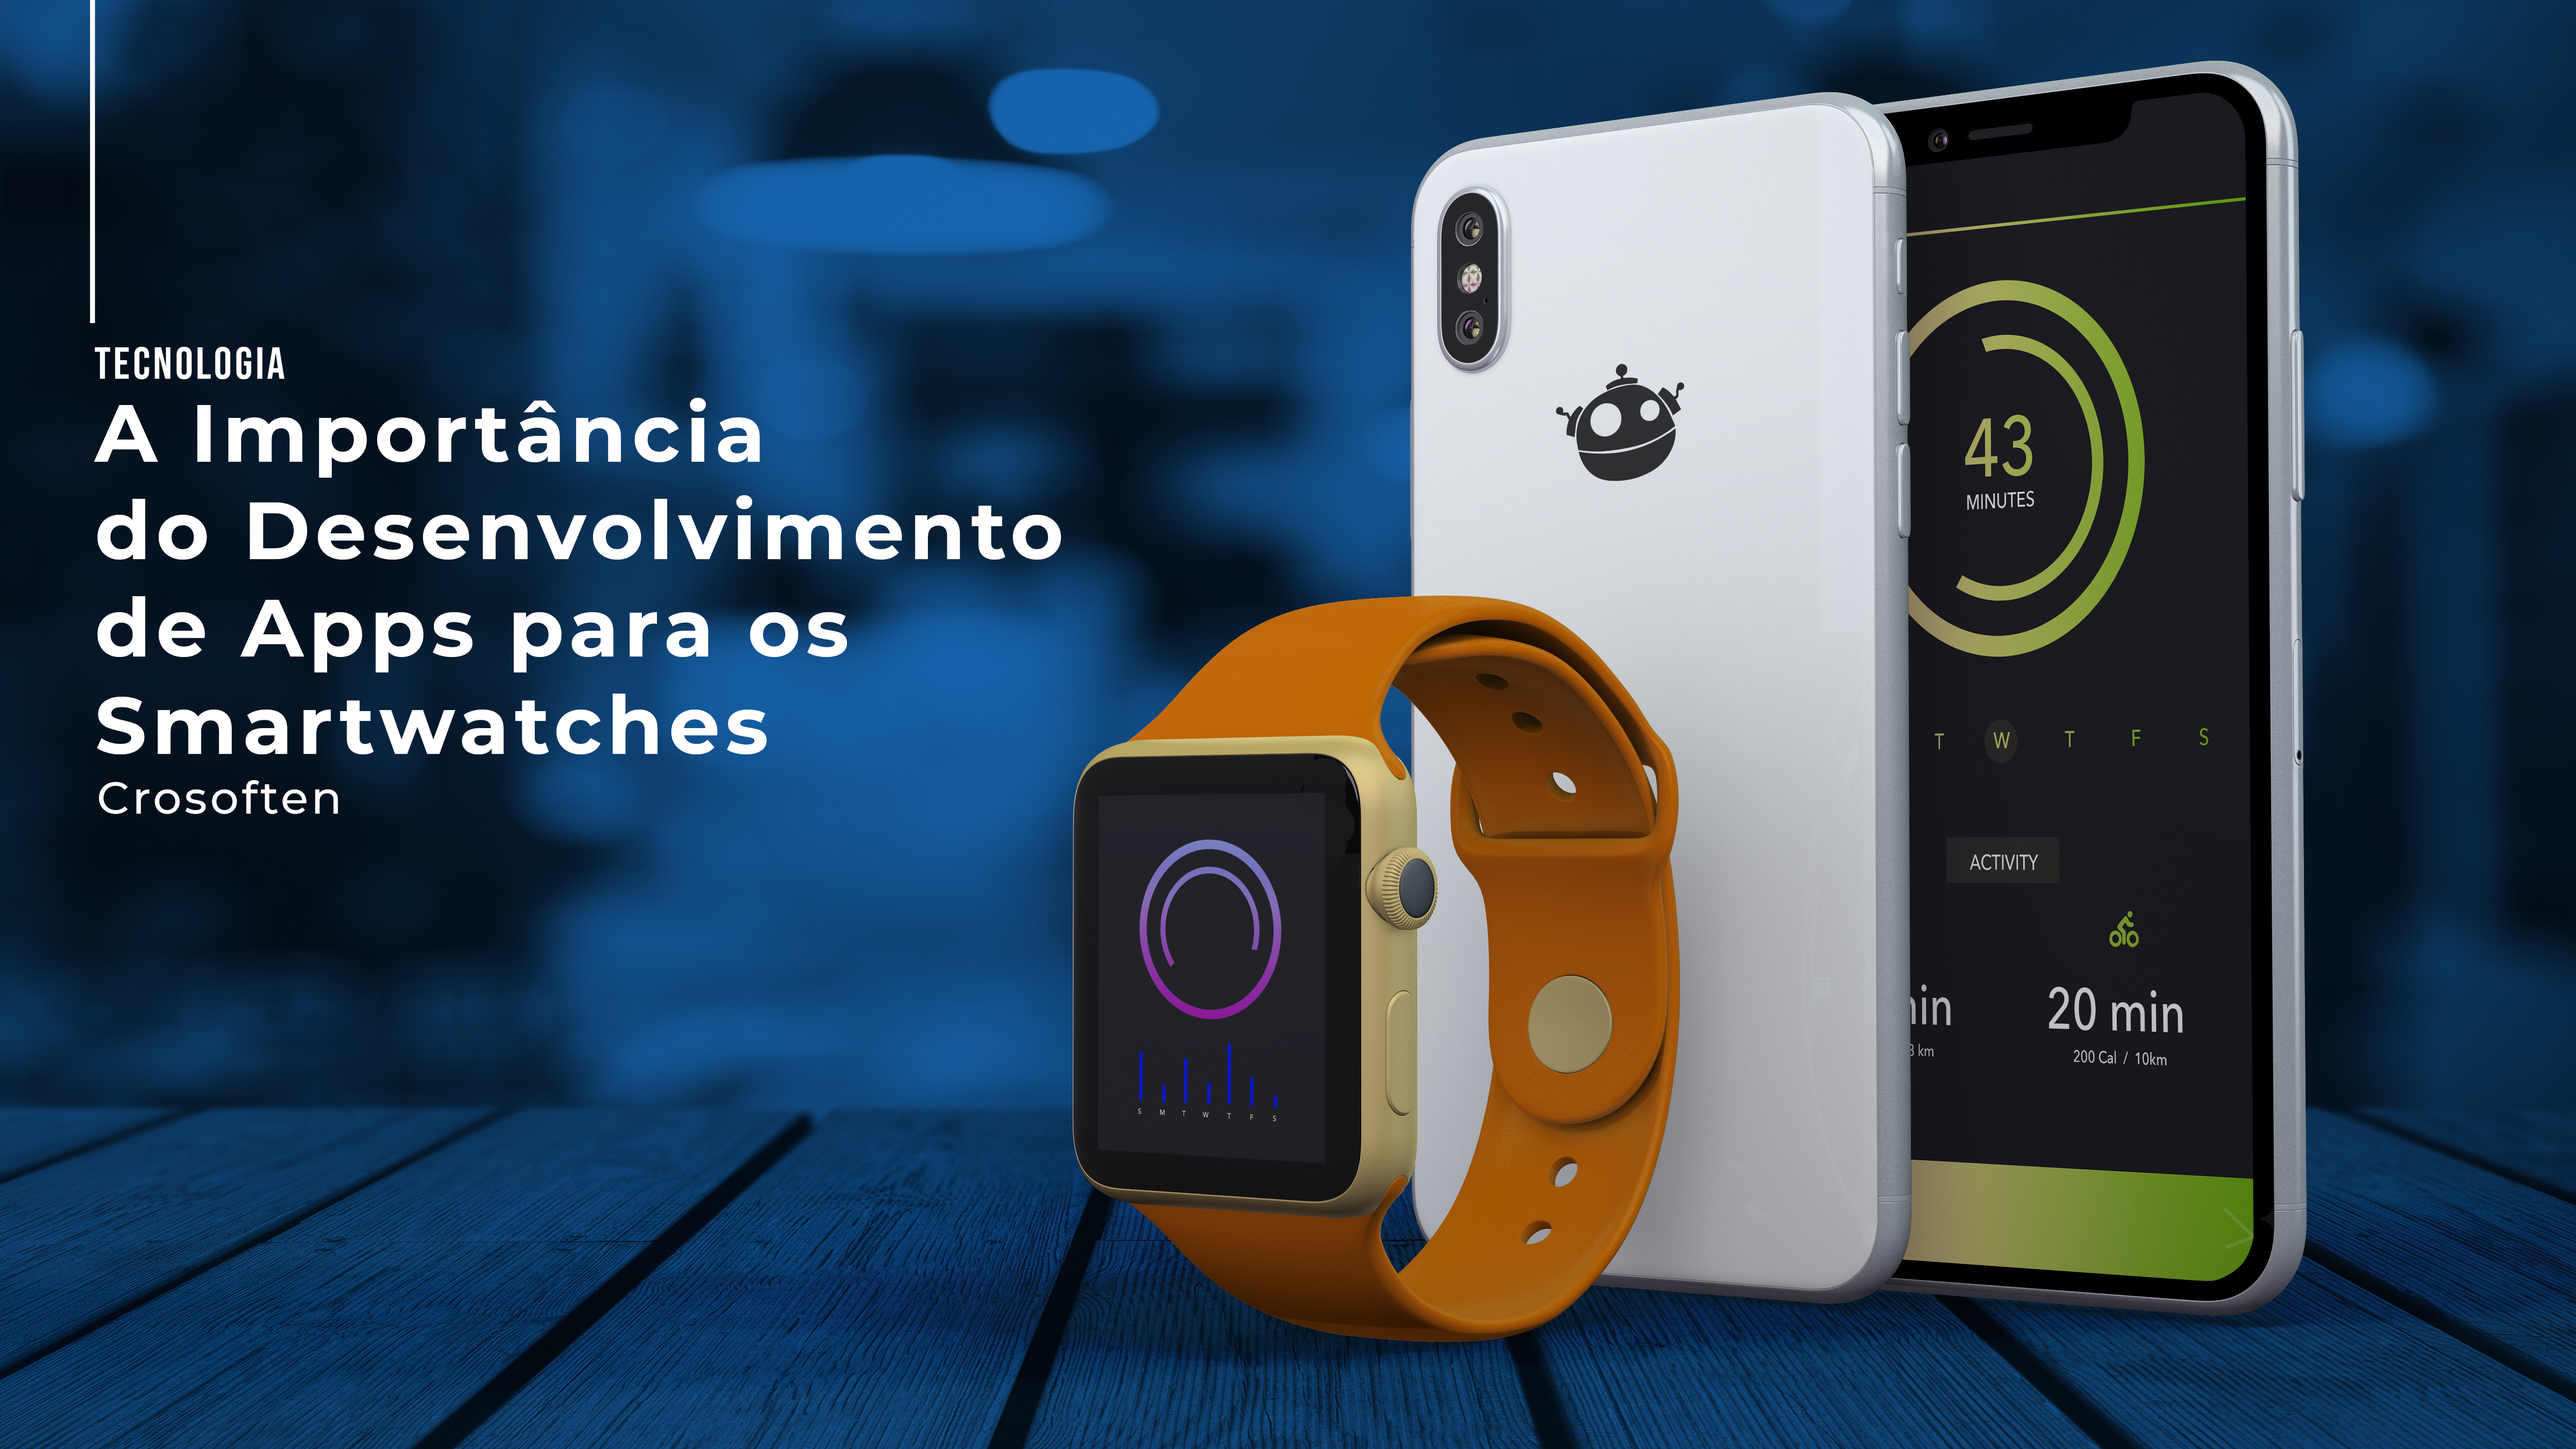 A importância do desenvolvimento de apps dos smartwatches, representa mudanças revolucionárias no mundo tecnológico de hoje